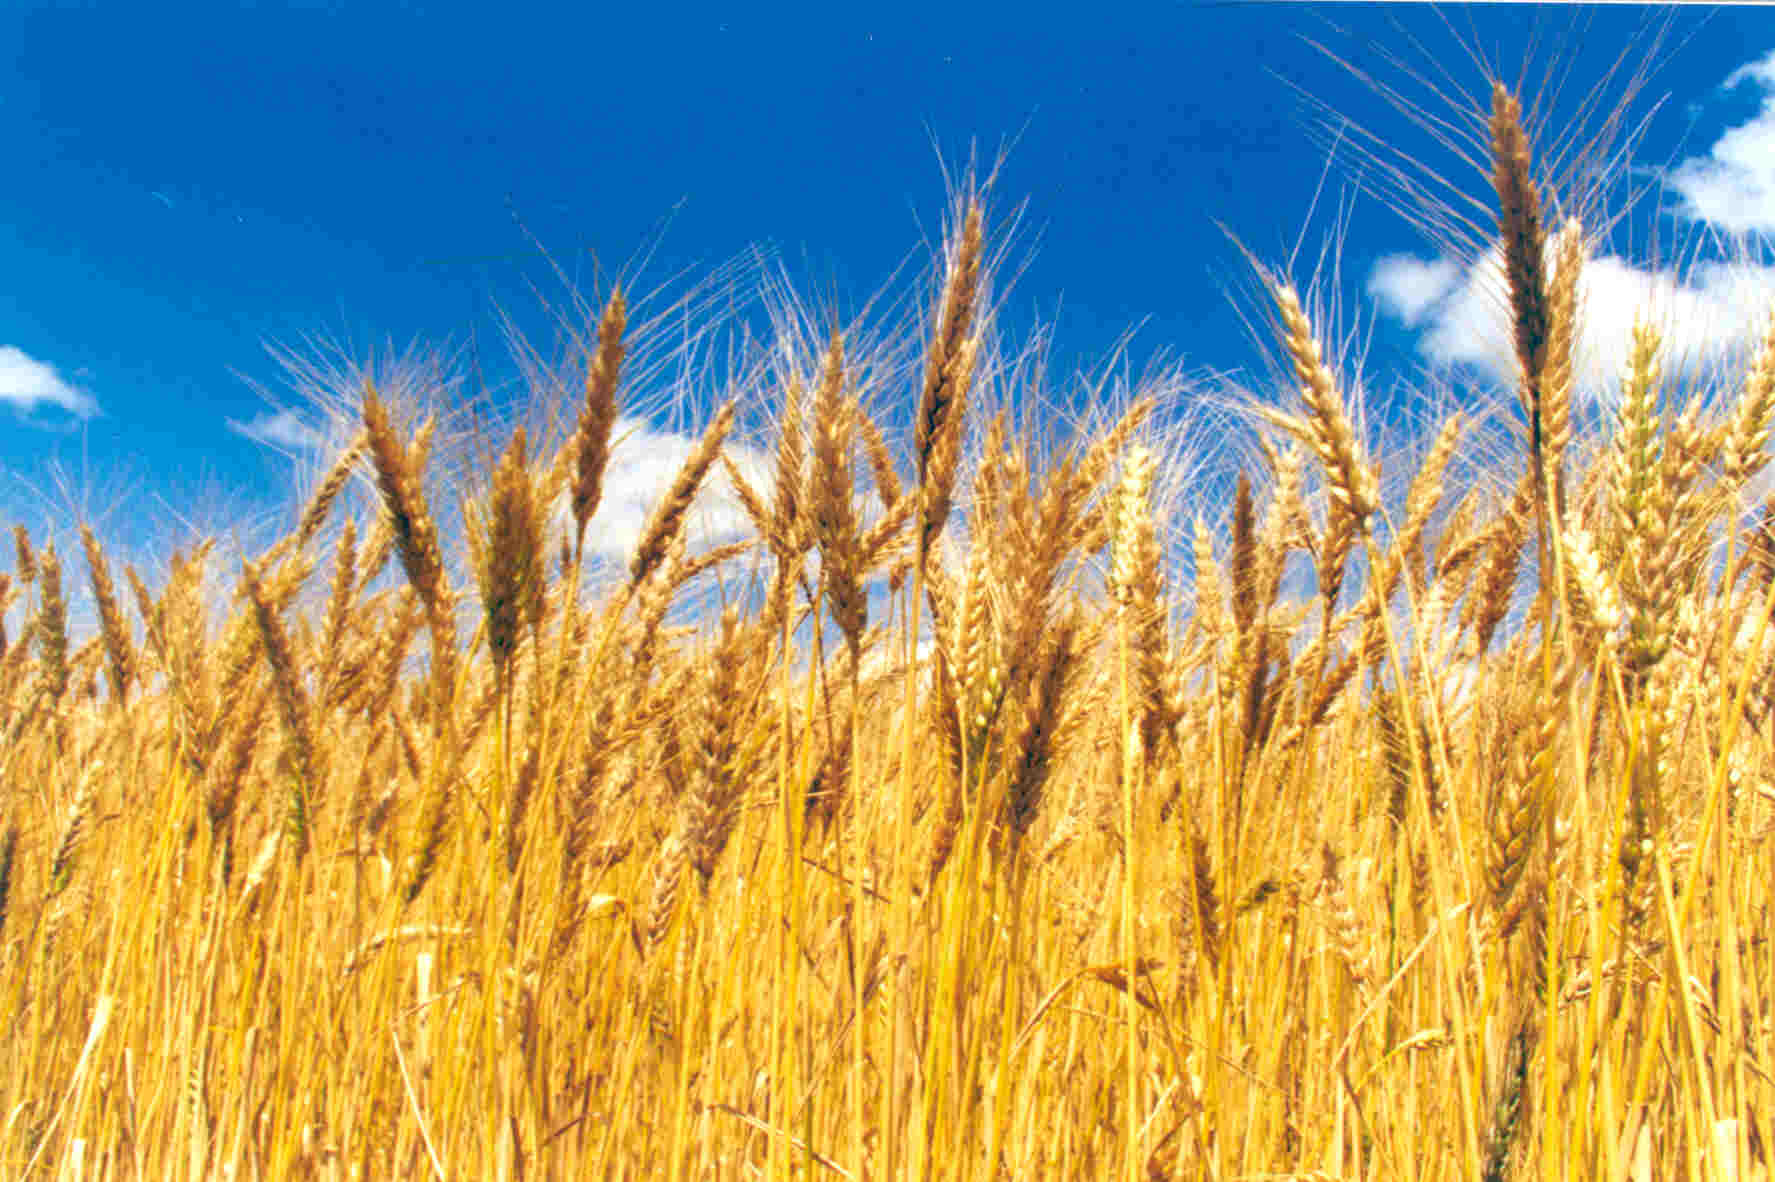 Emater/RS-Ascar recebe mais de oito mil pedidos de Proagro para trigo